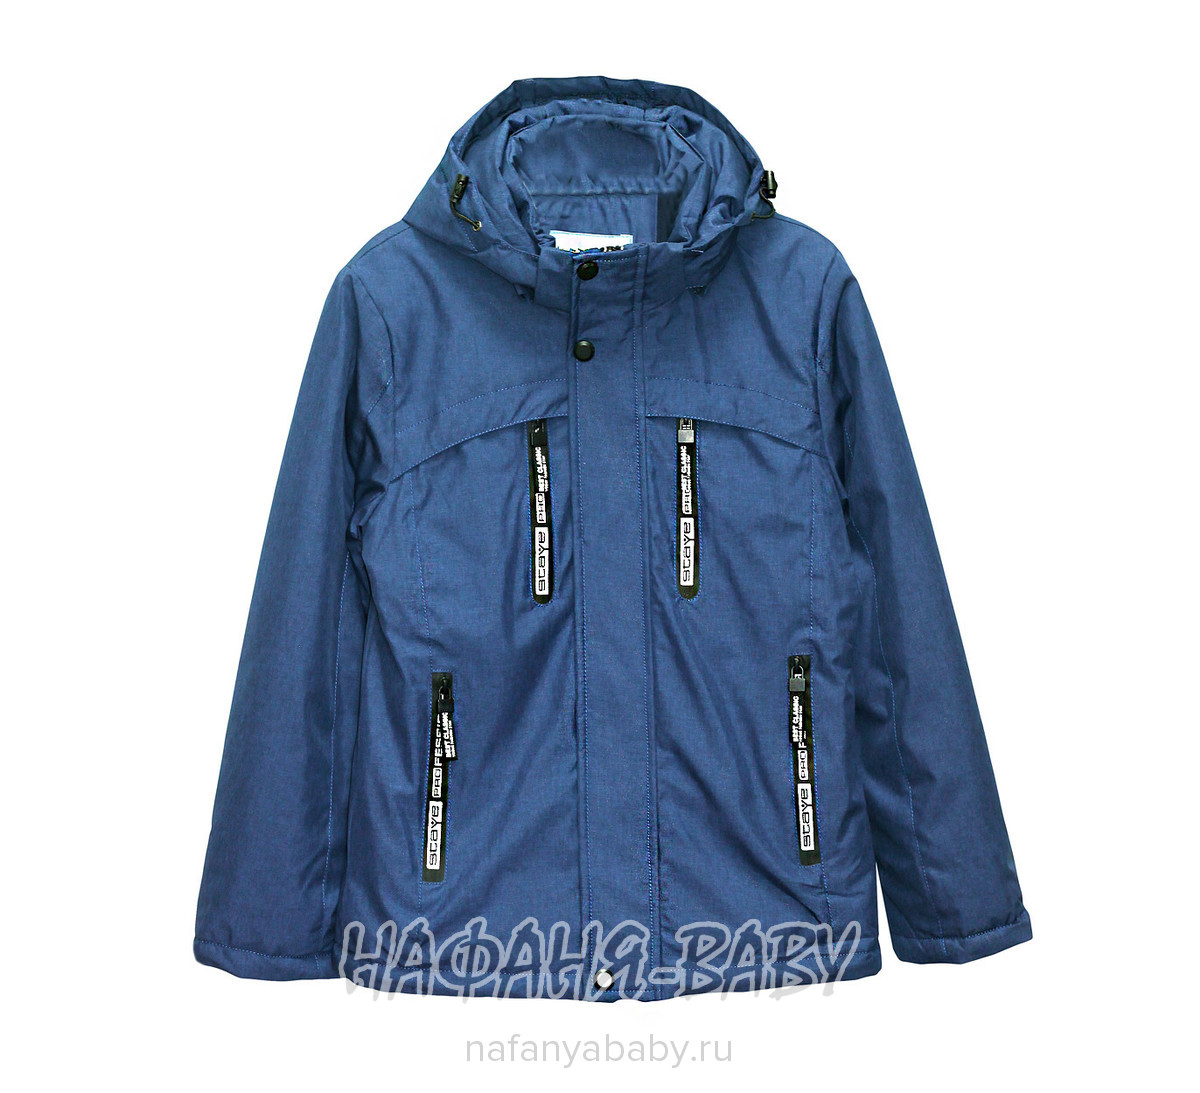 Подростковая демисезонная куртка WEISHIDO арт: 1881, 10-15 лет, цвет сине-серый, оптом Китай (Пекин)